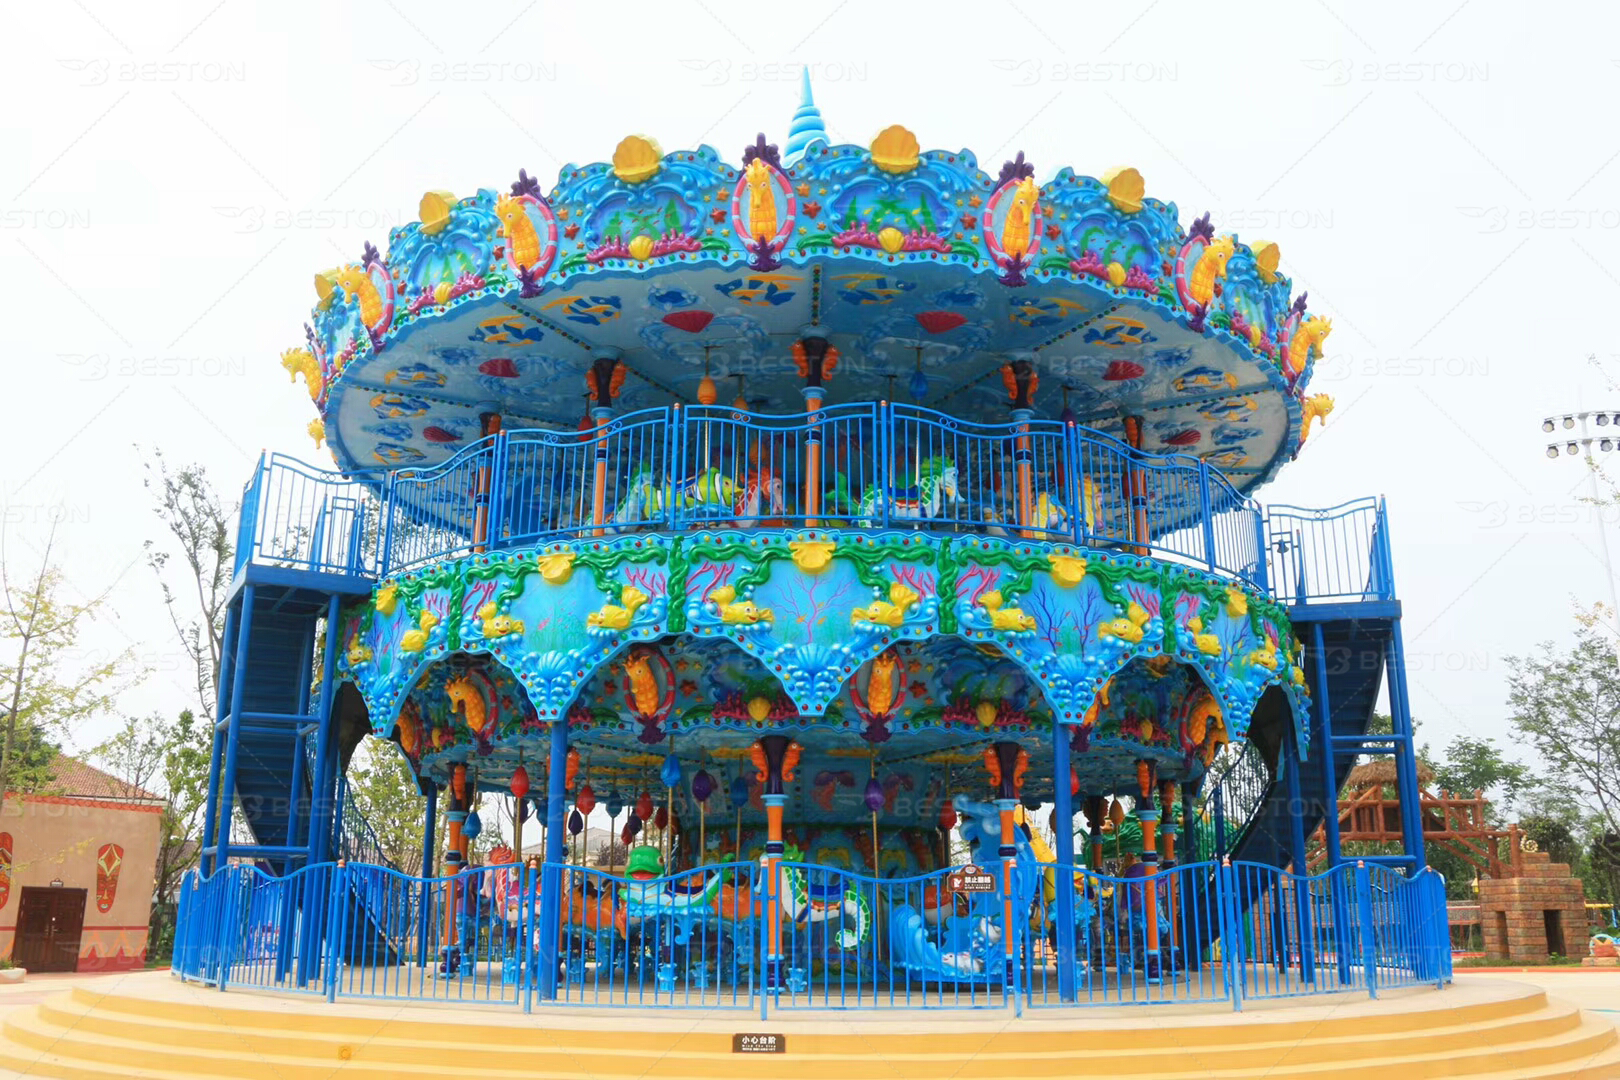 68 seats double decker ocean carousel for sale for amusement parks